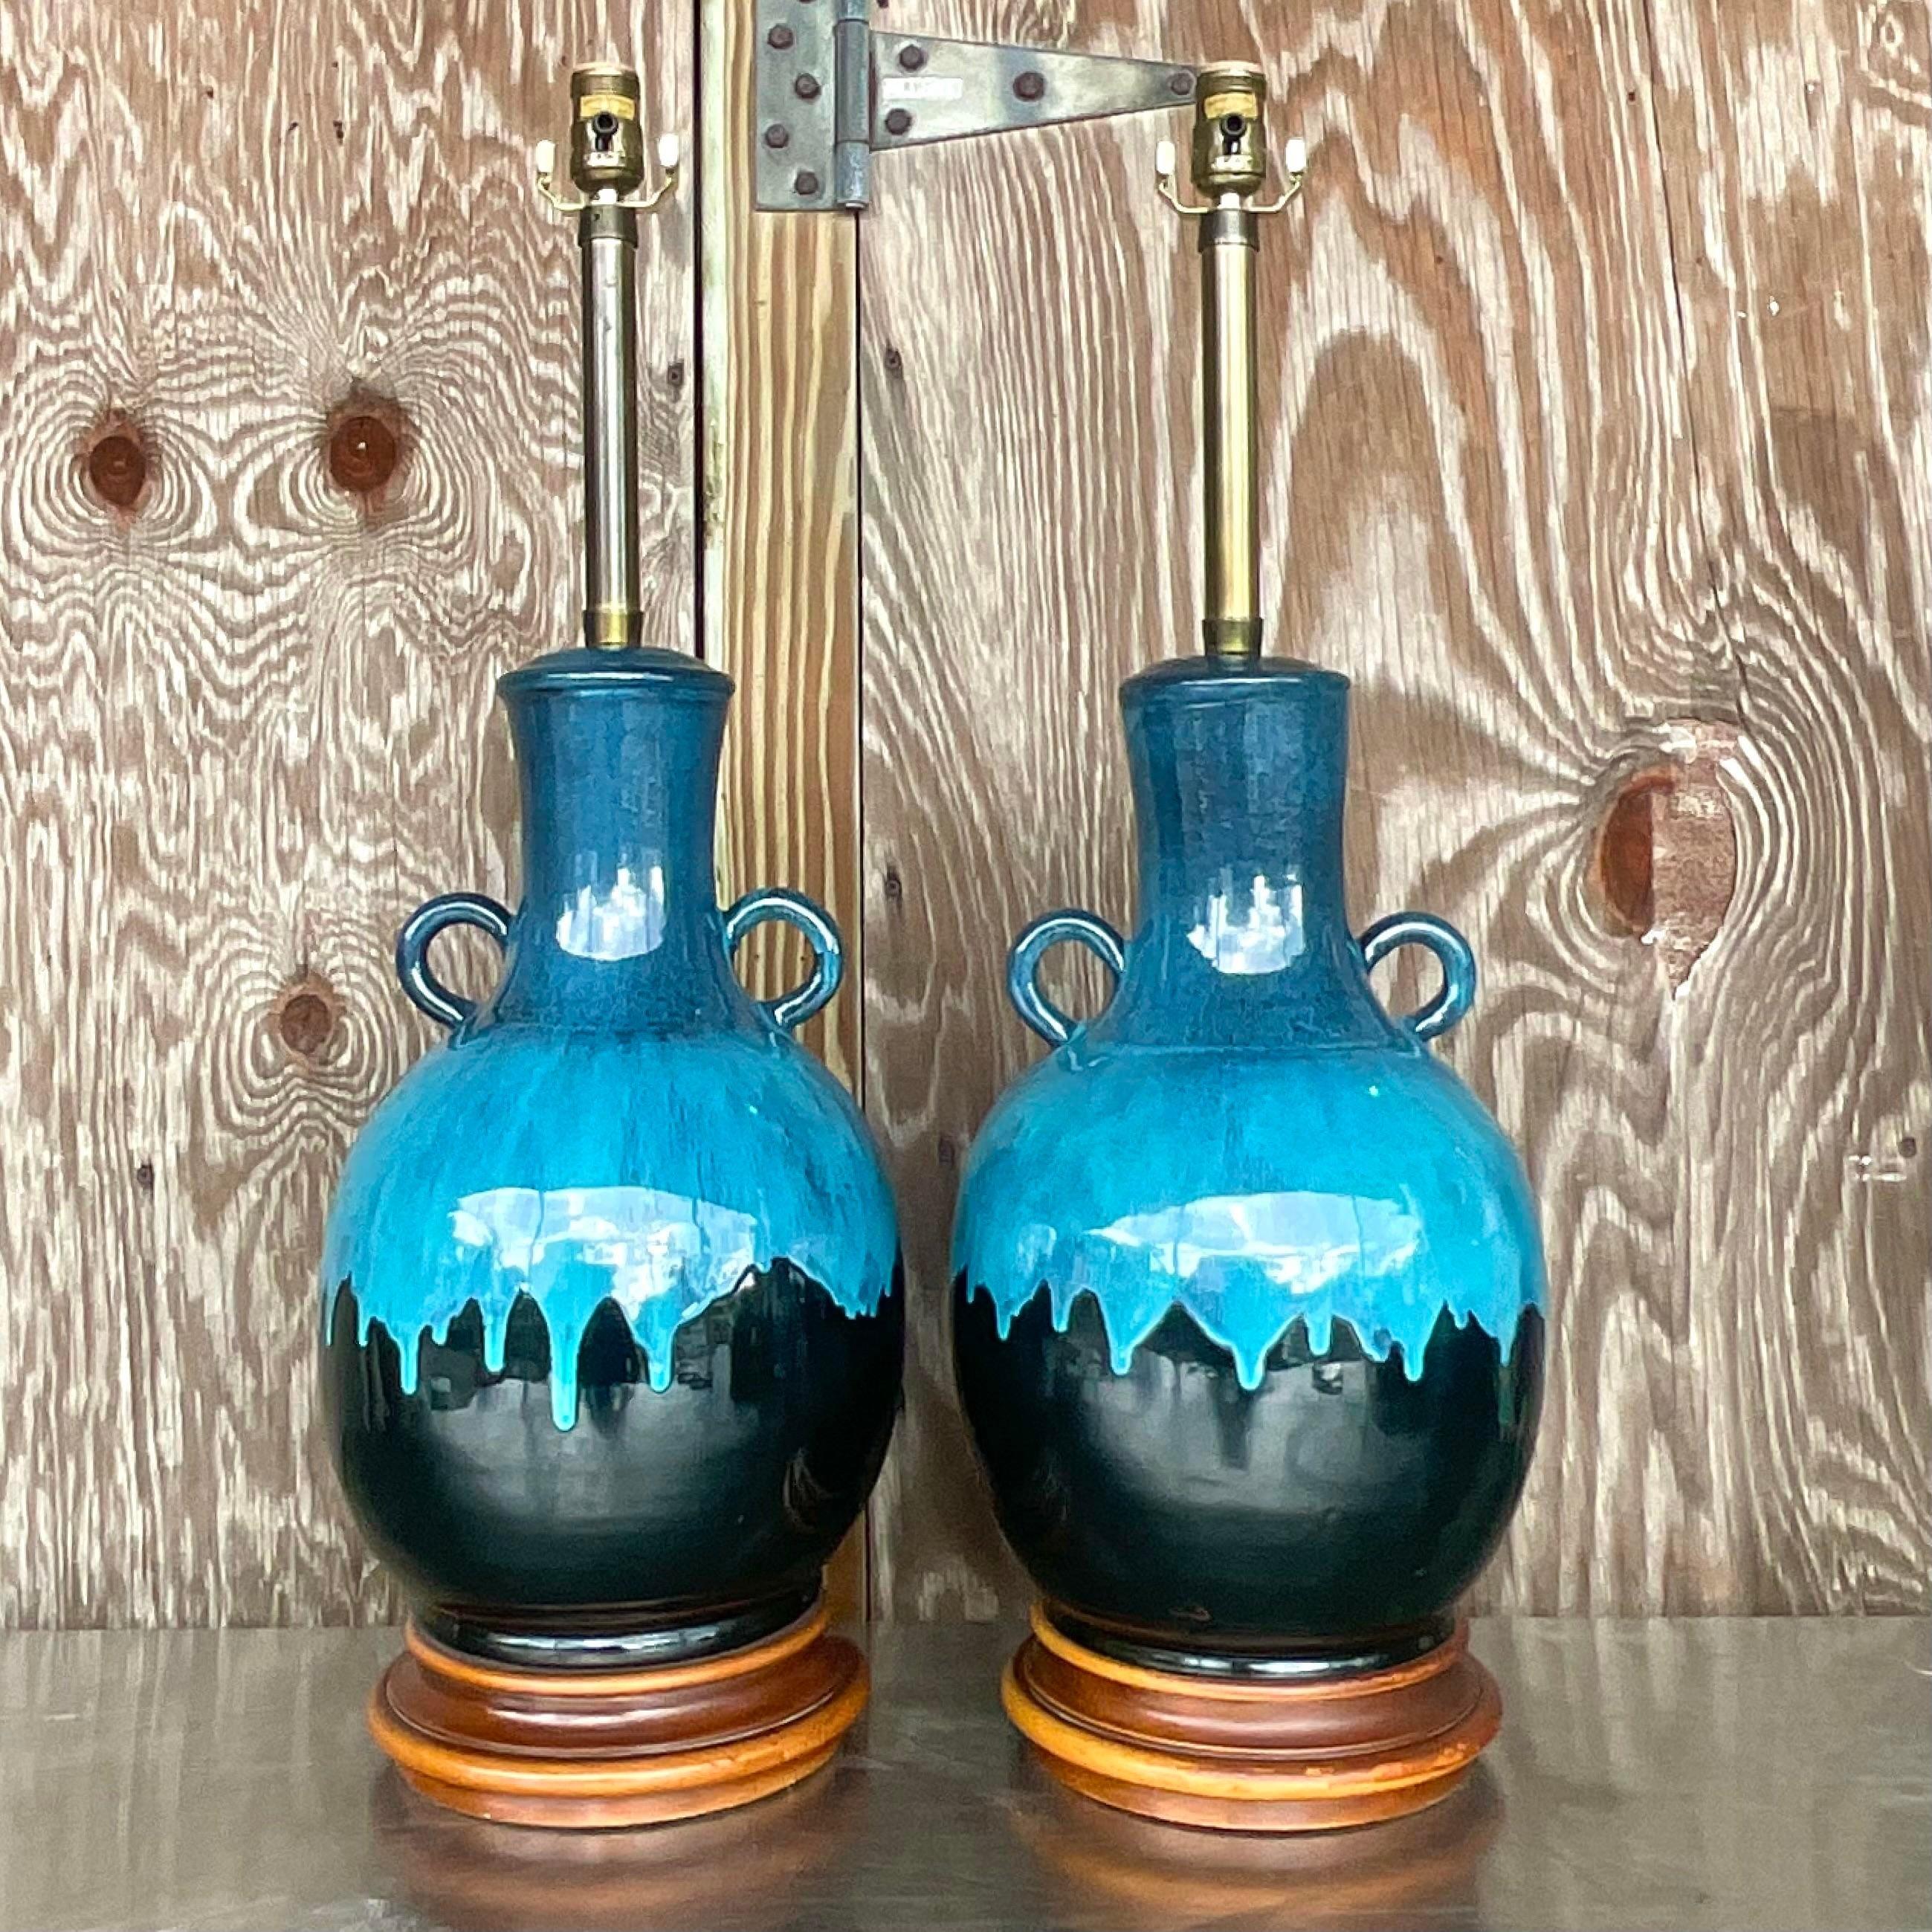 Vintage Boho Tropfglasur-Tischlampen mit Tropfglasur - ein Paar 1